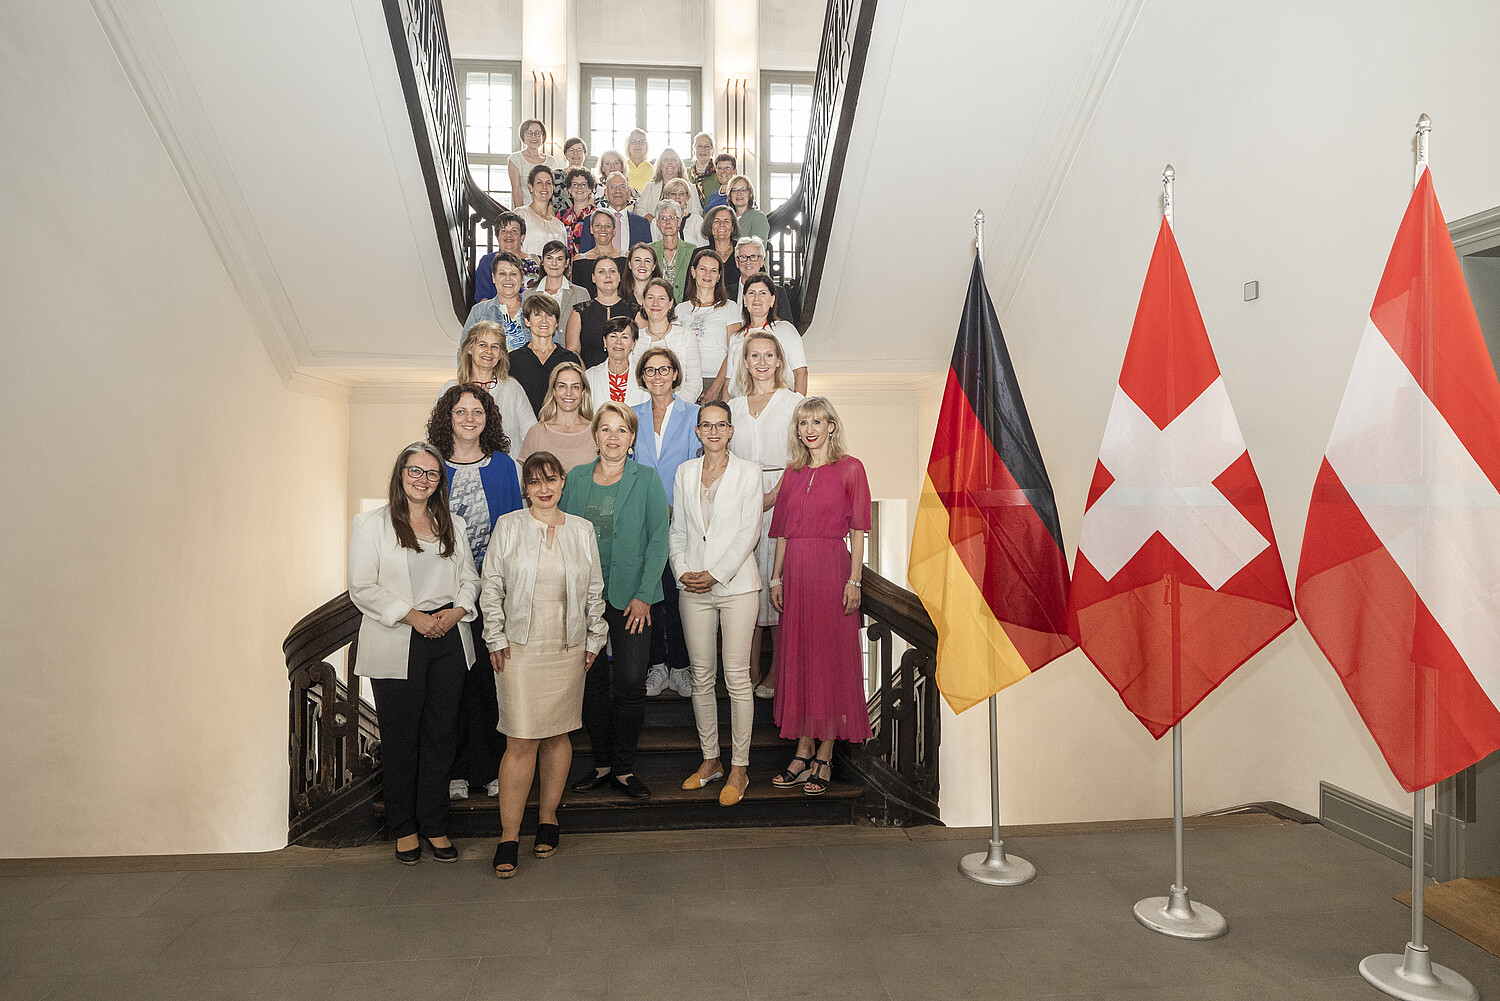 Le sindache di Germania, Austria e Svizzera si sono riunite a Schaffhausen a giugno per il terzo Congresso internazionale delle sindache.